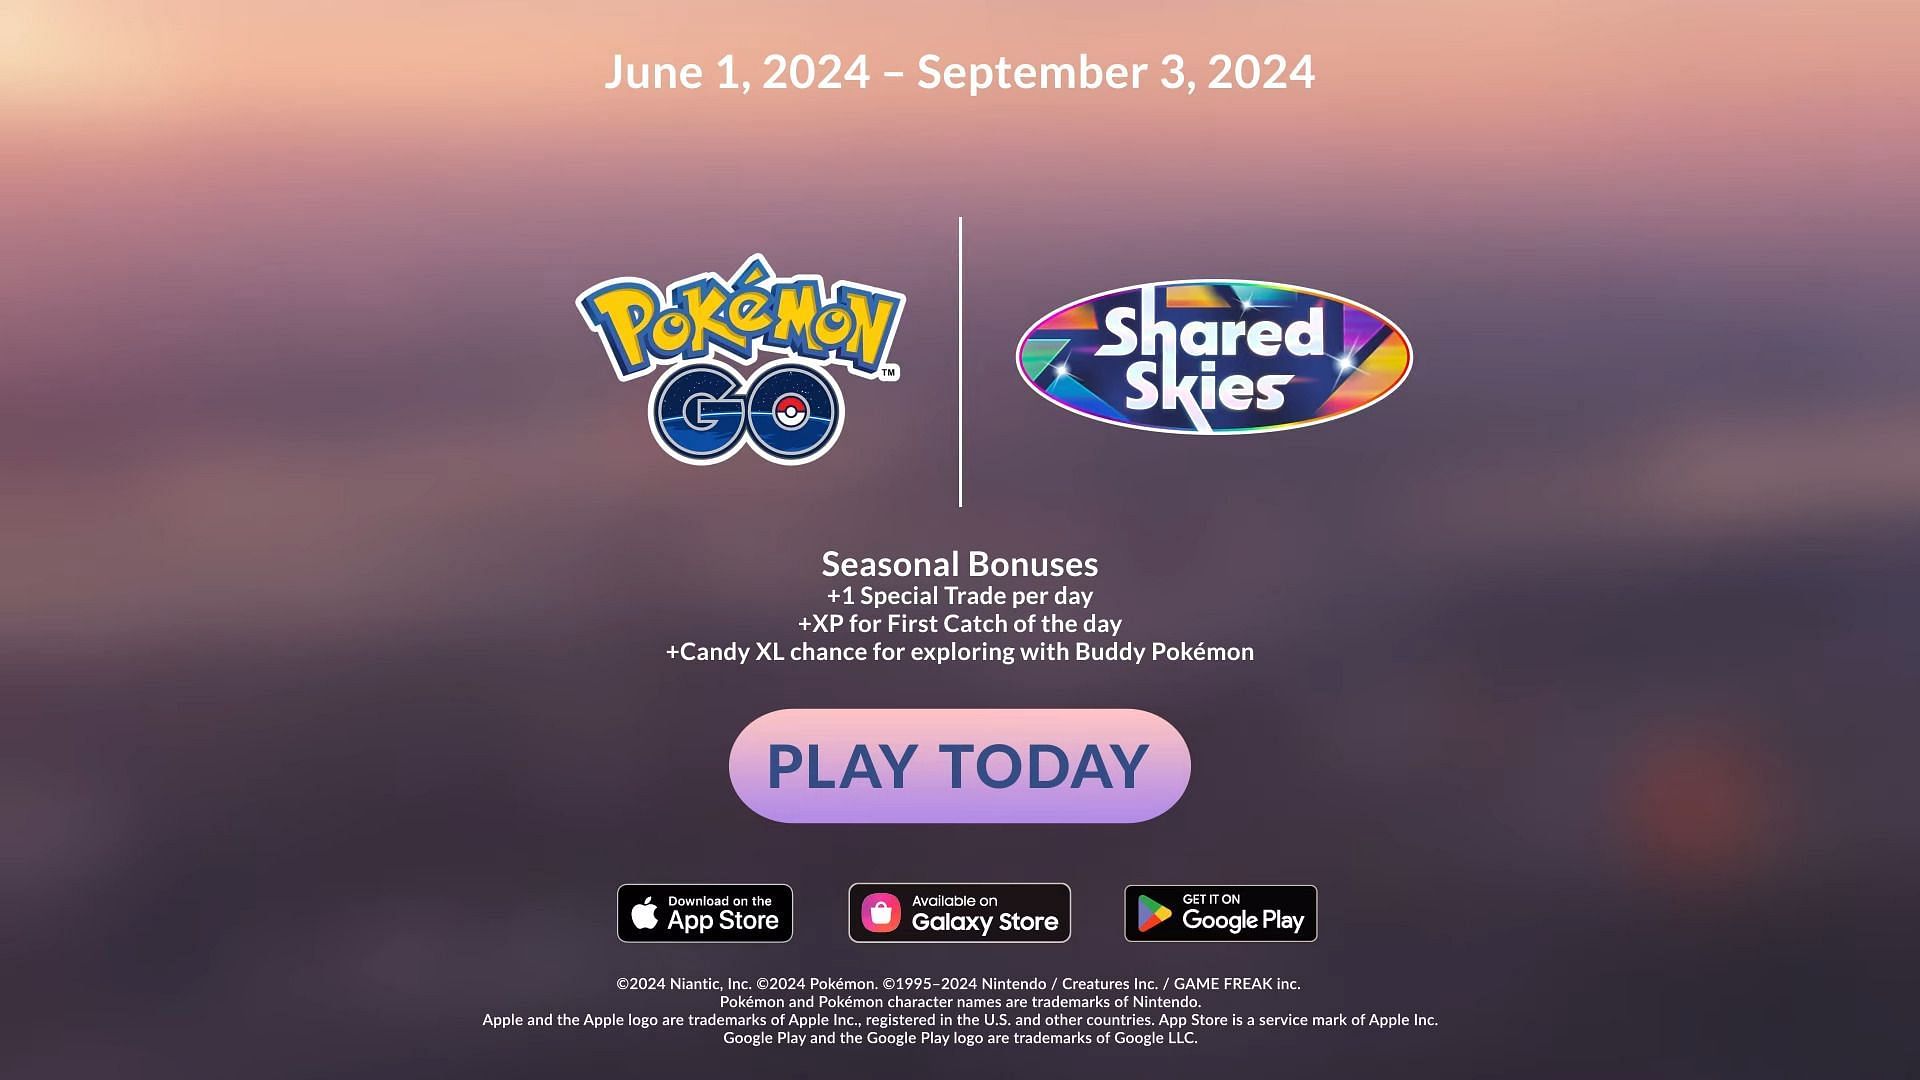 L'ultima stagione di contenuti di Pokemon GO è iniziata il 1° giugno (immagine tramite Niantic)